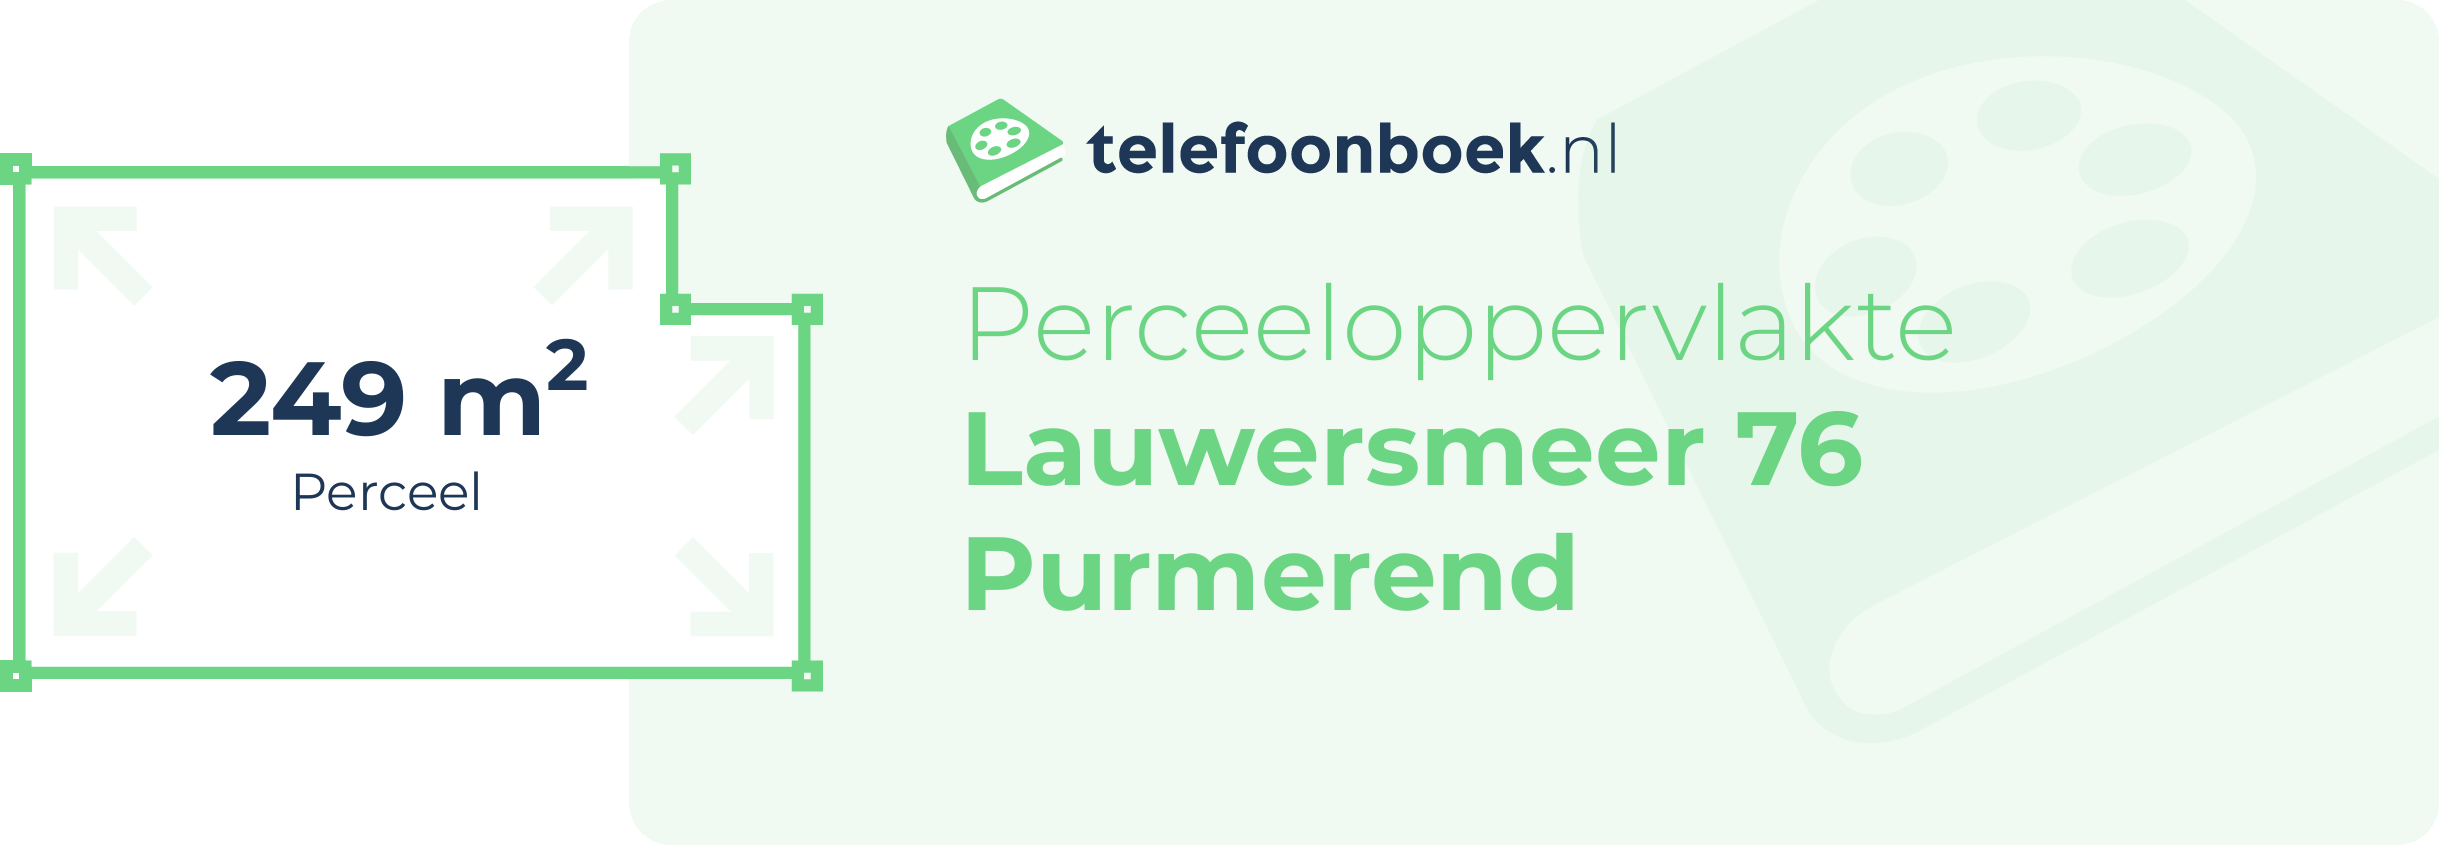 Perceeloppervlakte Lauwersmeer 76 Purmerend